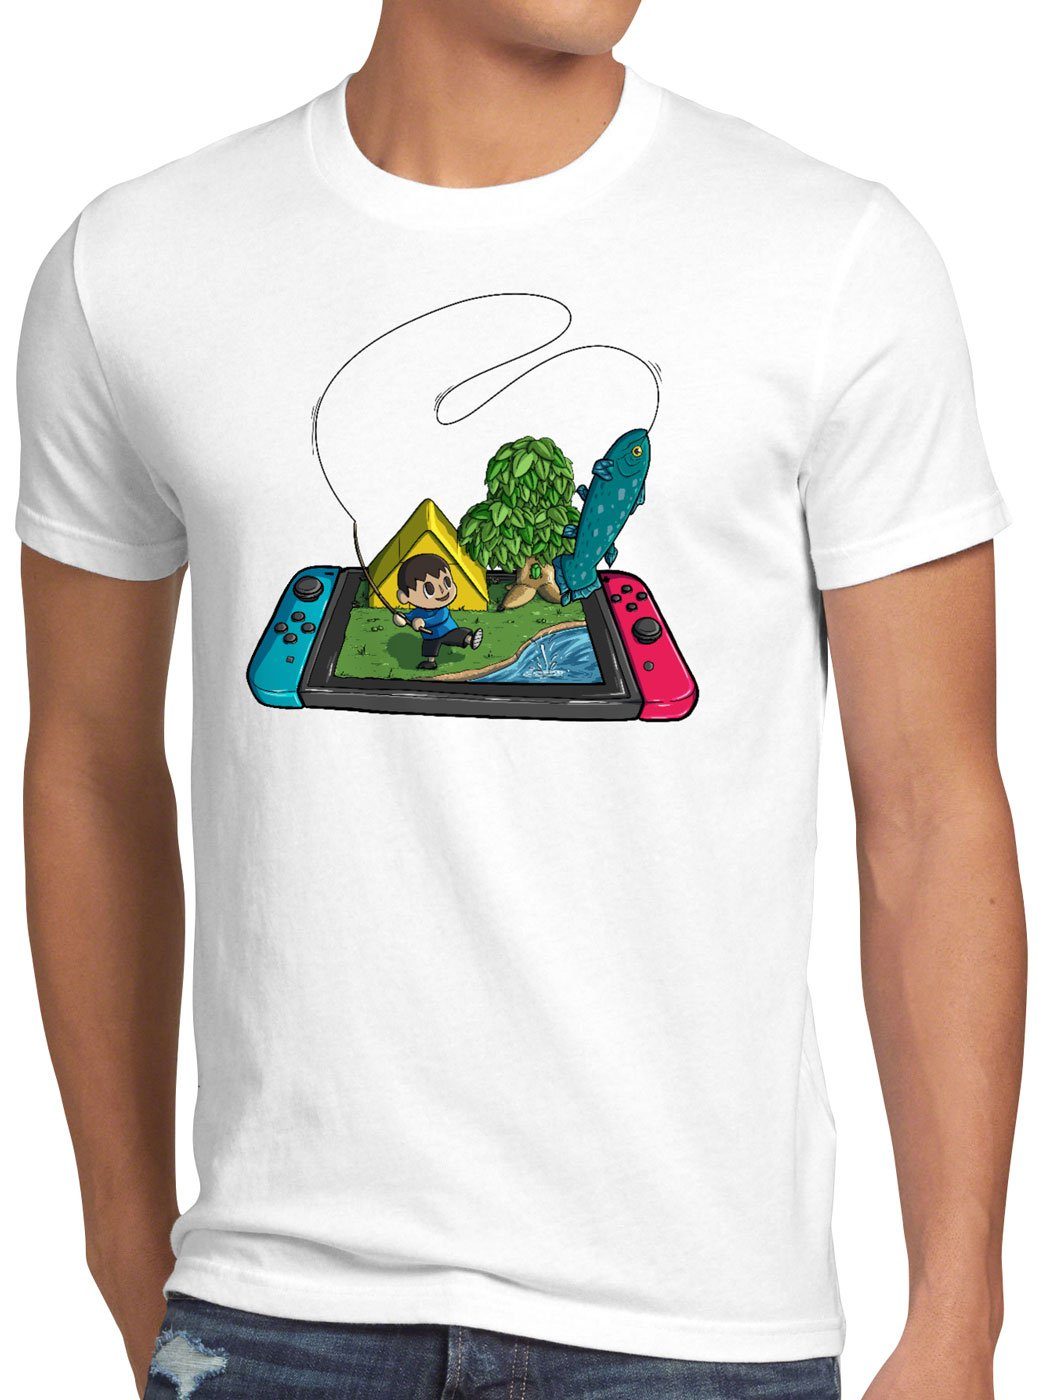 weiß Print-Shirt Herren style3 animal horizons switch videospiel Fisch T-Shirt Crossing